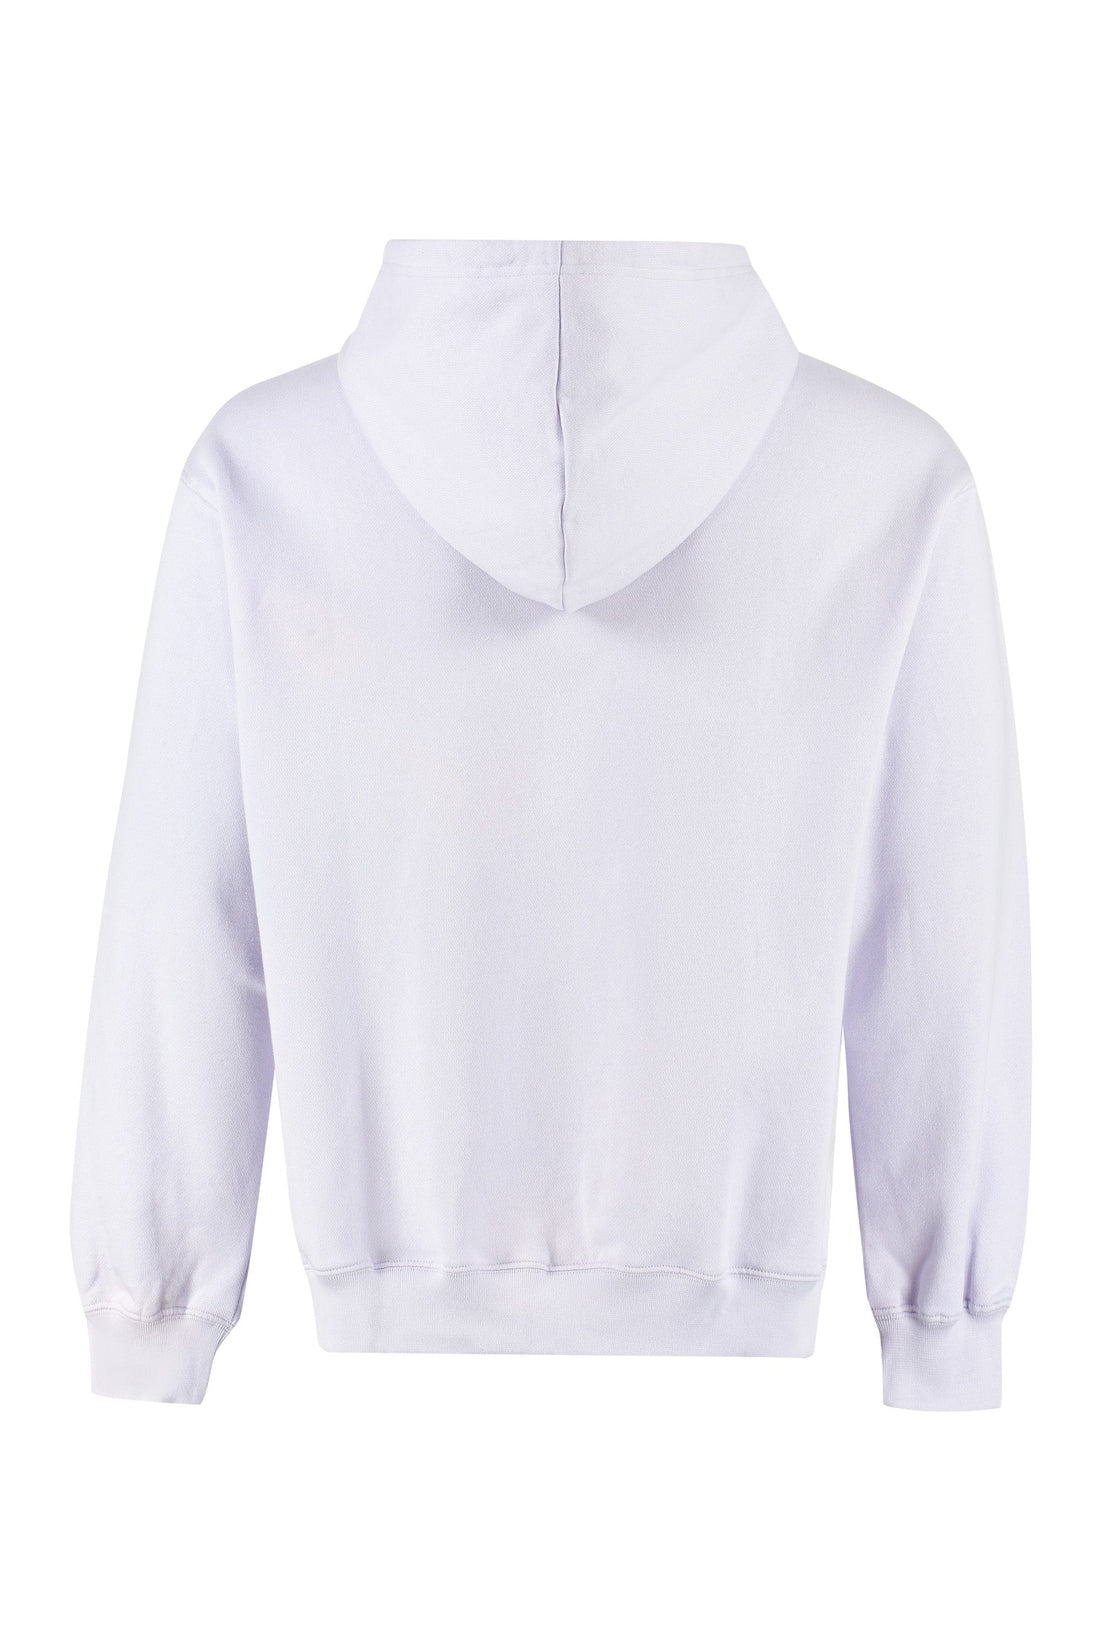 Maison Labiche-OUTLET-SALE-Reaumur cotton hoodie-ARCHIVIST